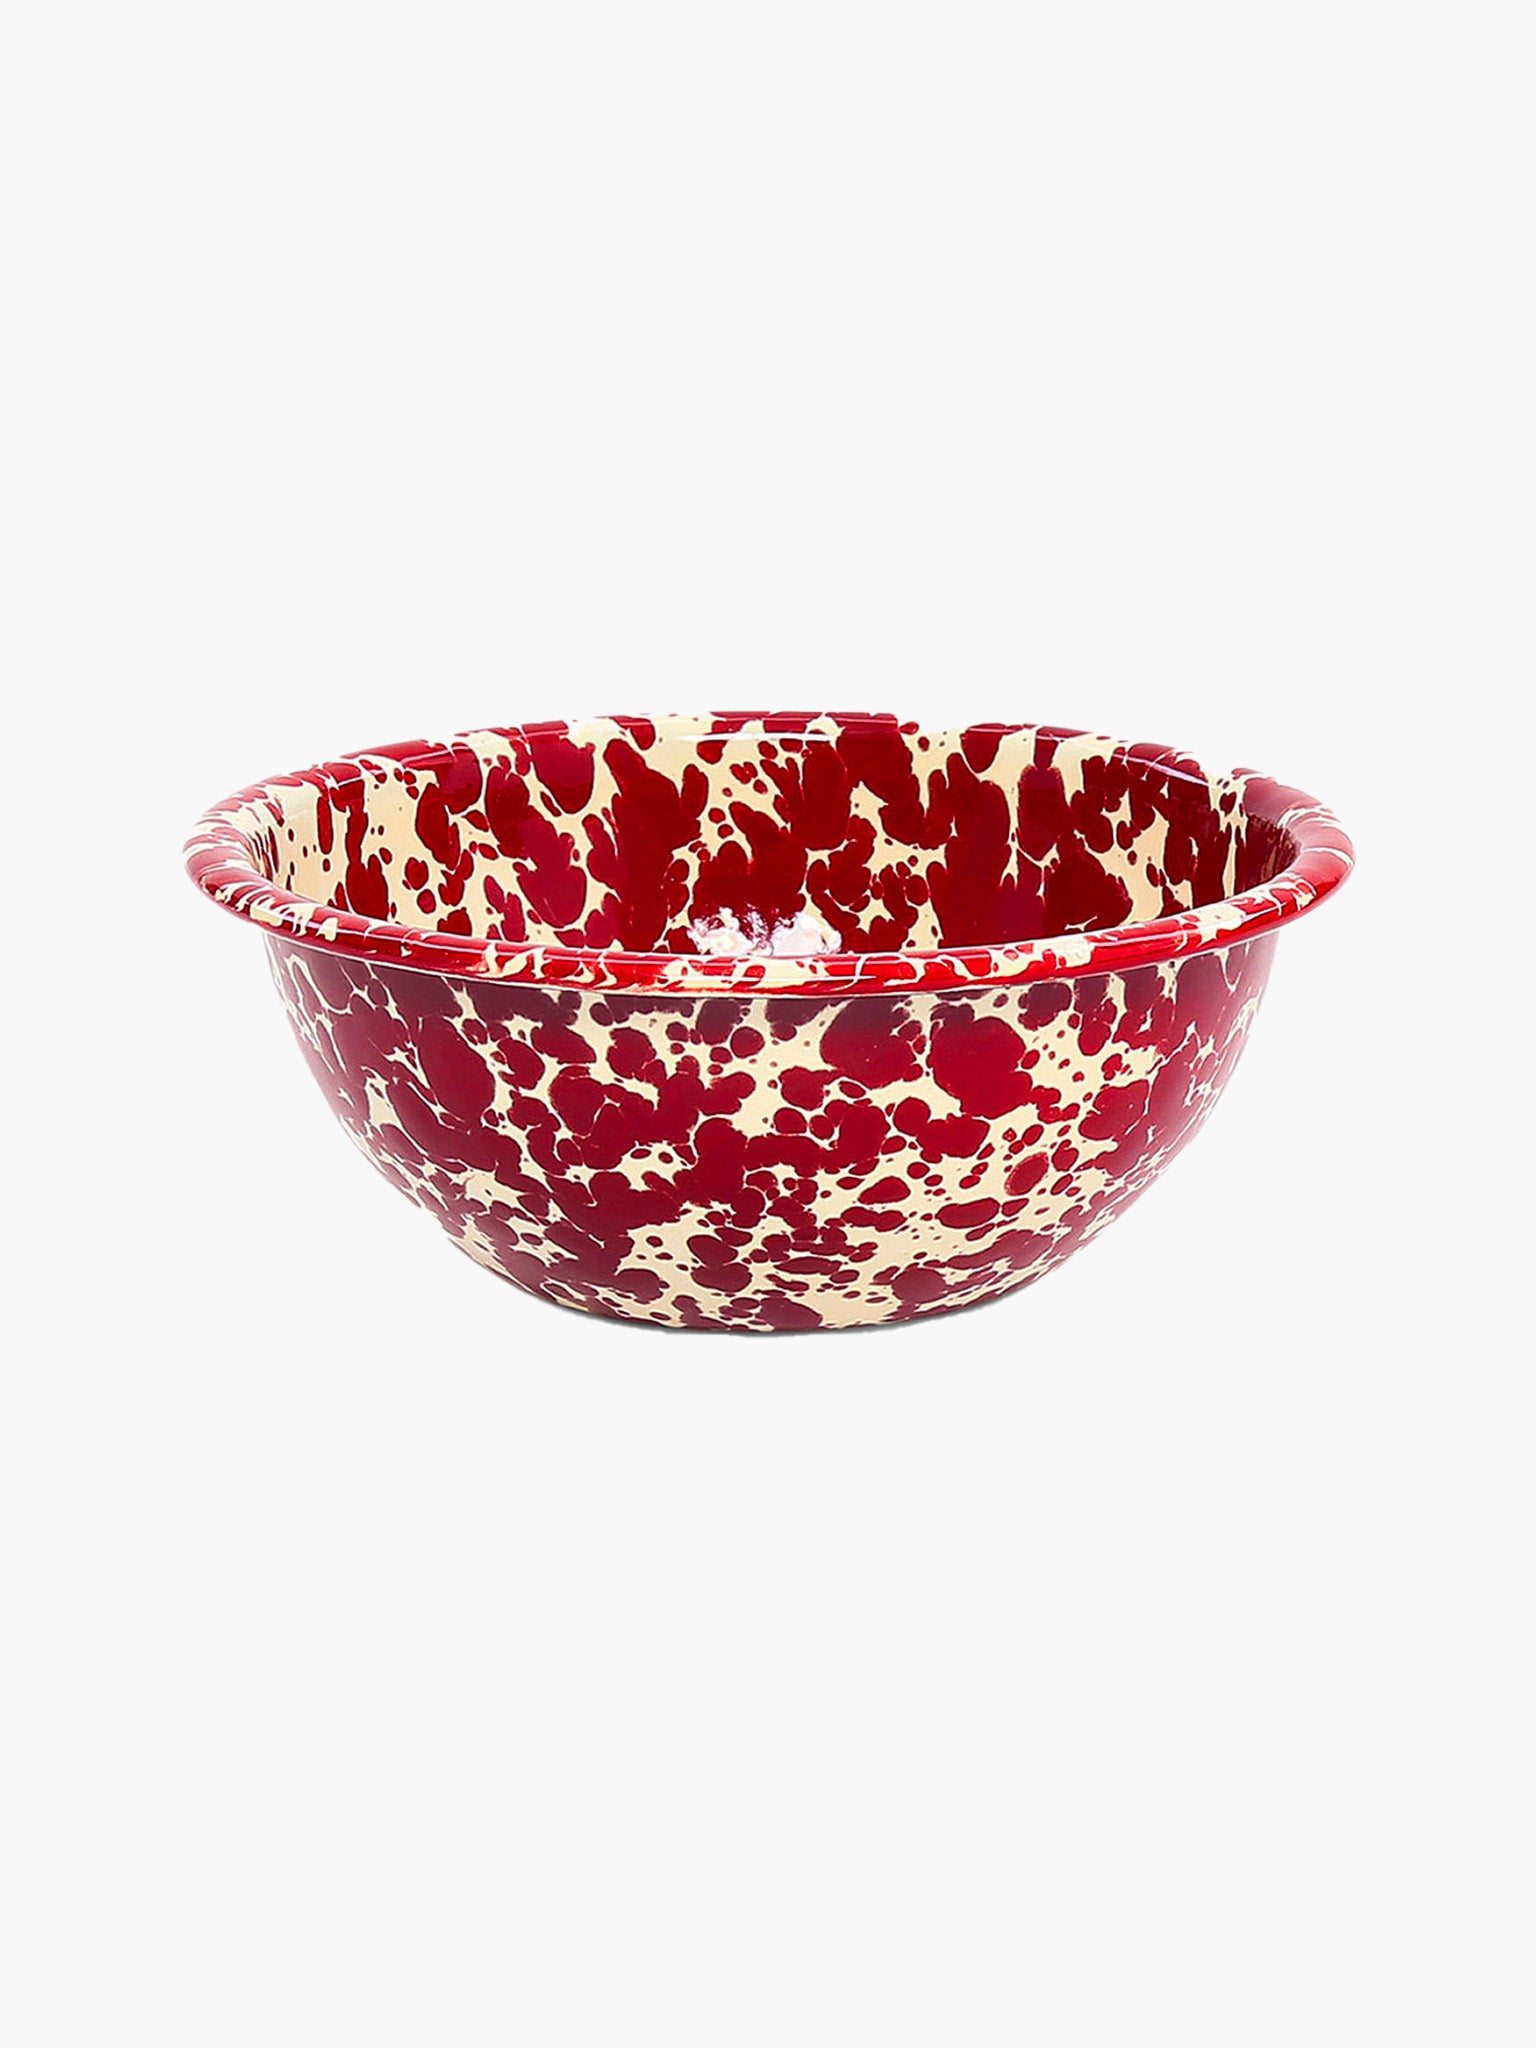 Splatter Cereal Bowl (16cm) - Burgundy & Cream